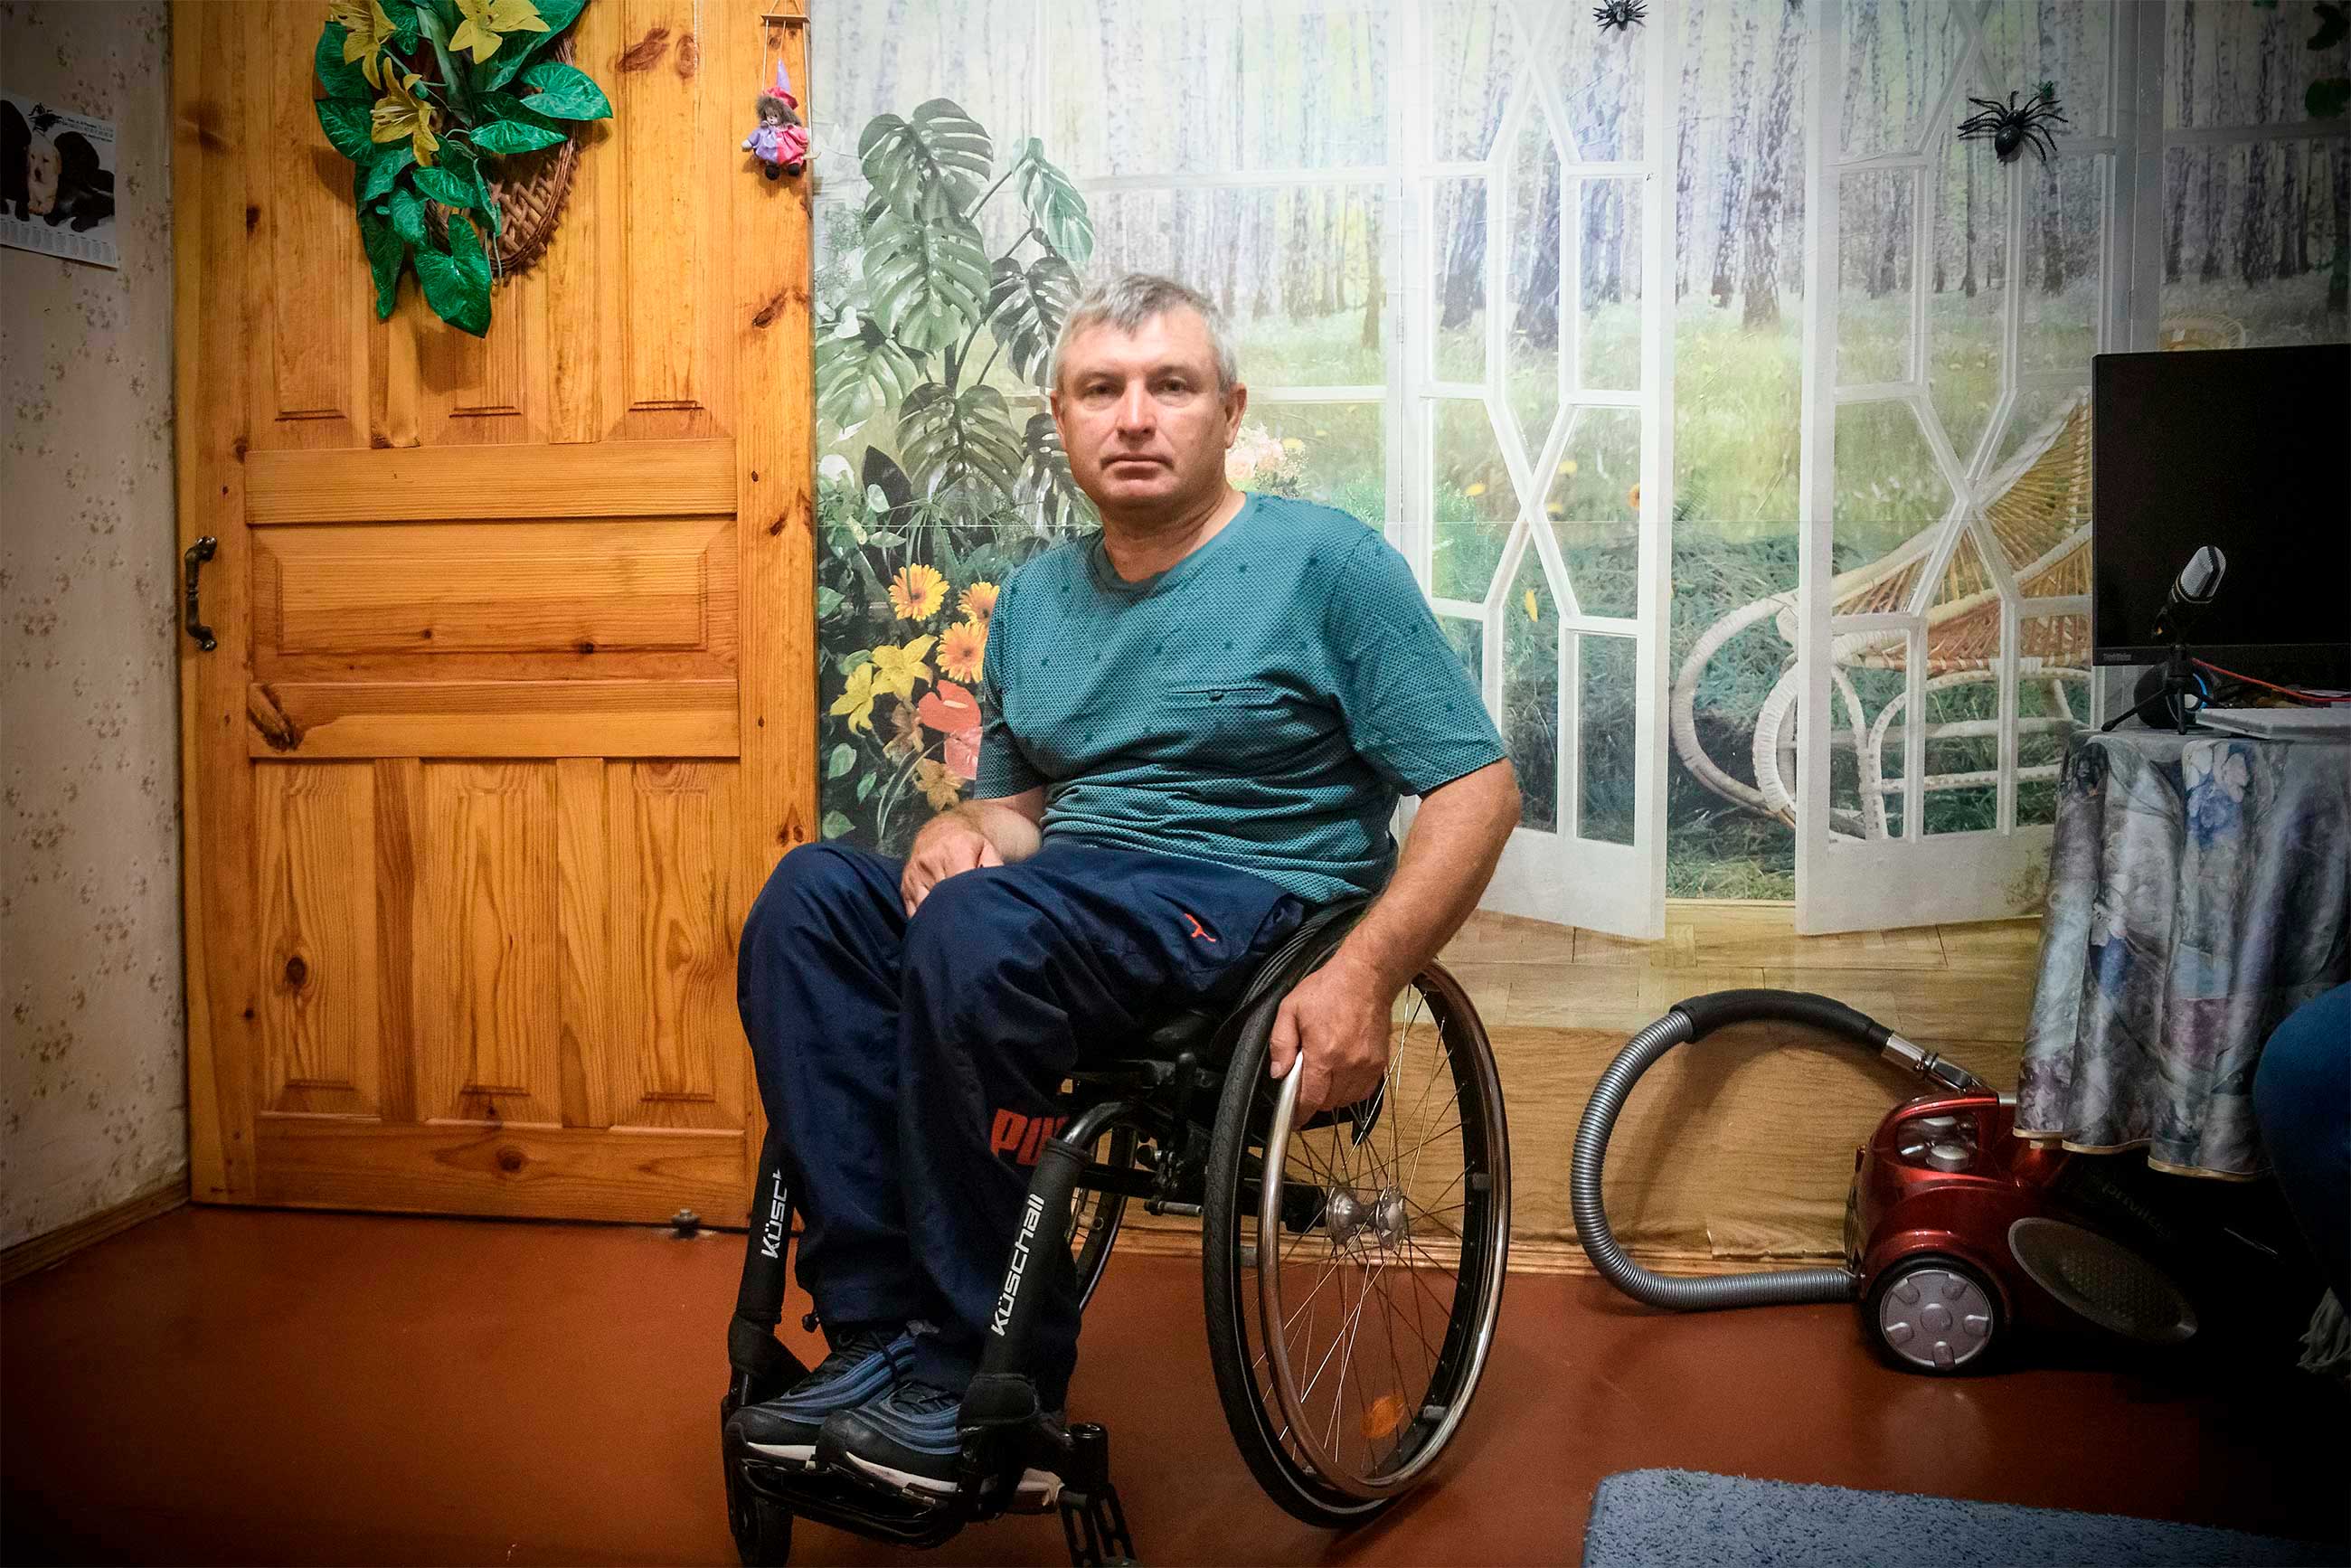 Херсон, партизани і деокупація: історія людини з інвалідністю, що евакуювалася із захопленого міста